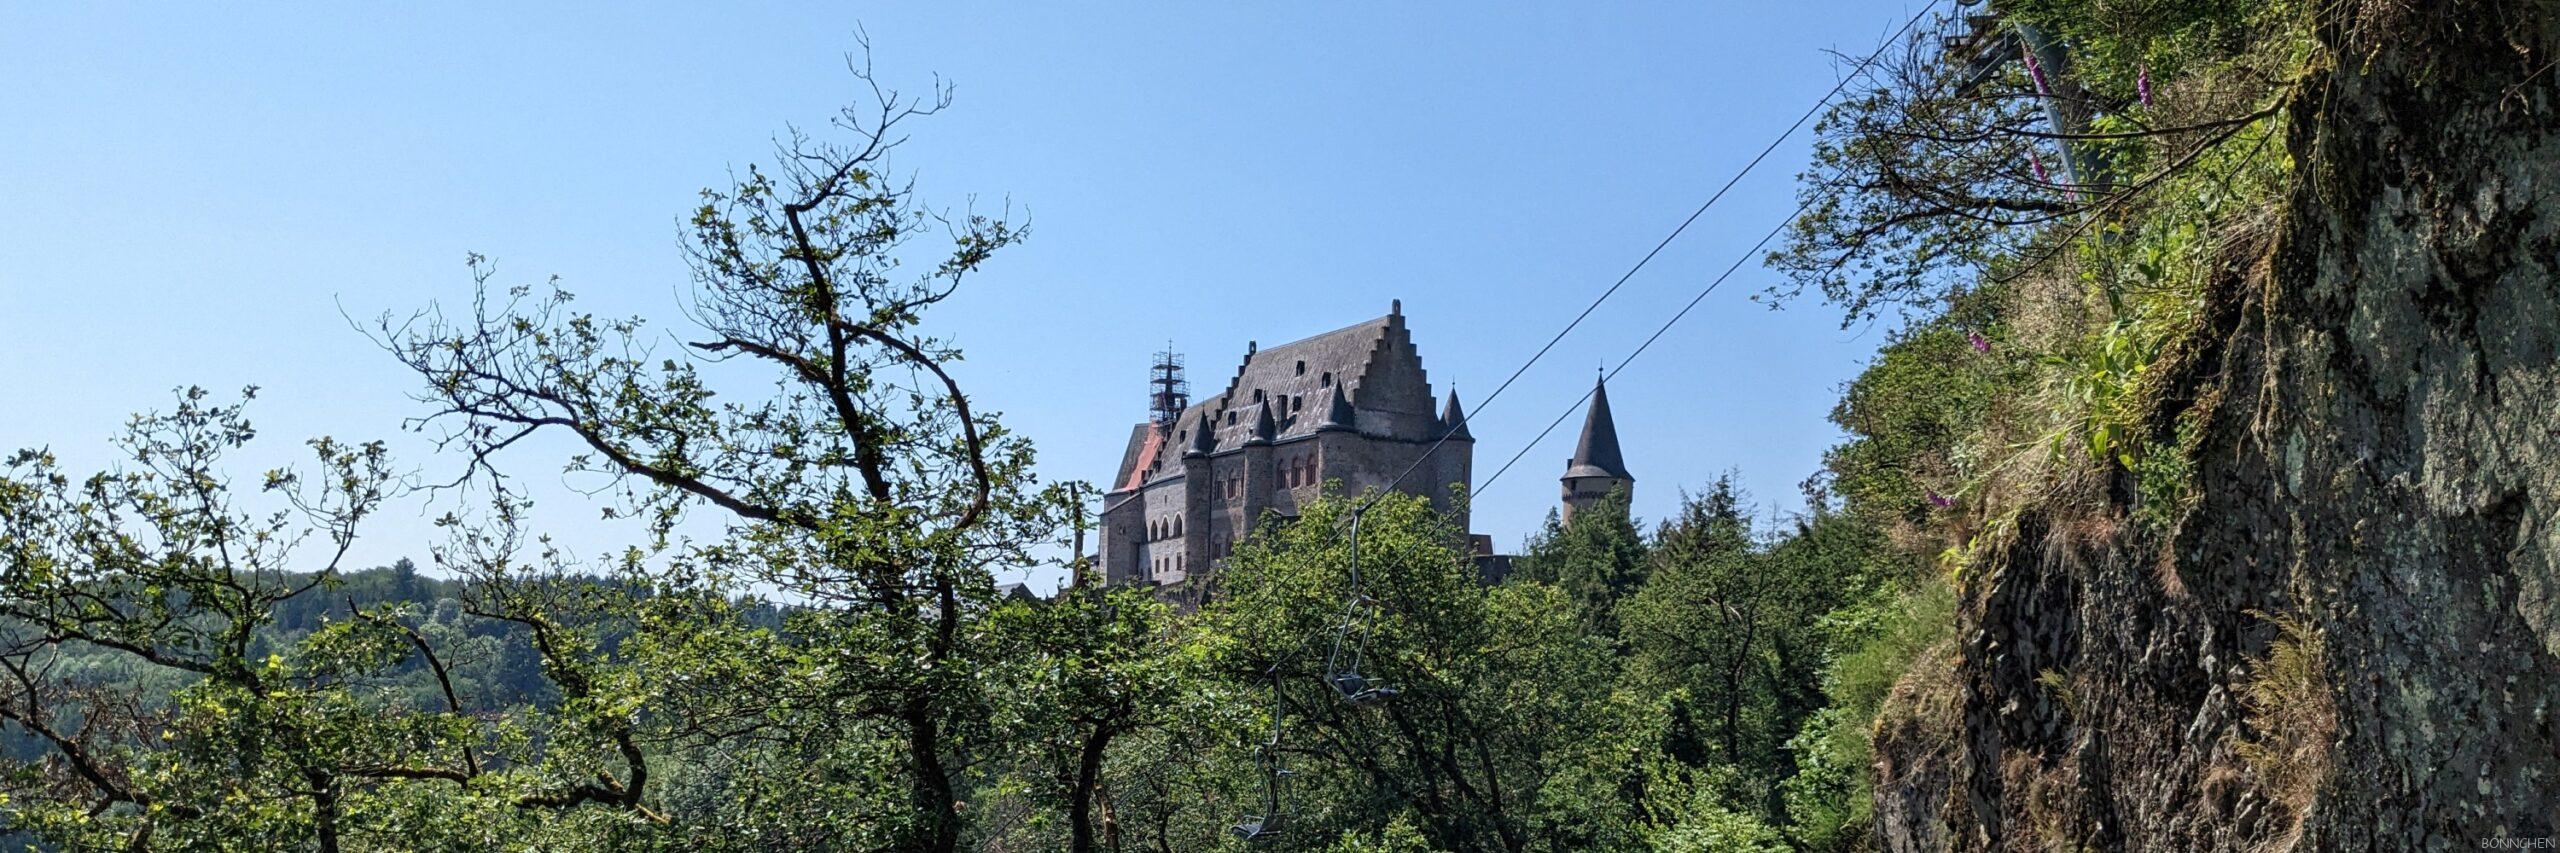 Burg Vianden oder Schloss Vianden ~ Vianden Sehenswürdigkeiten